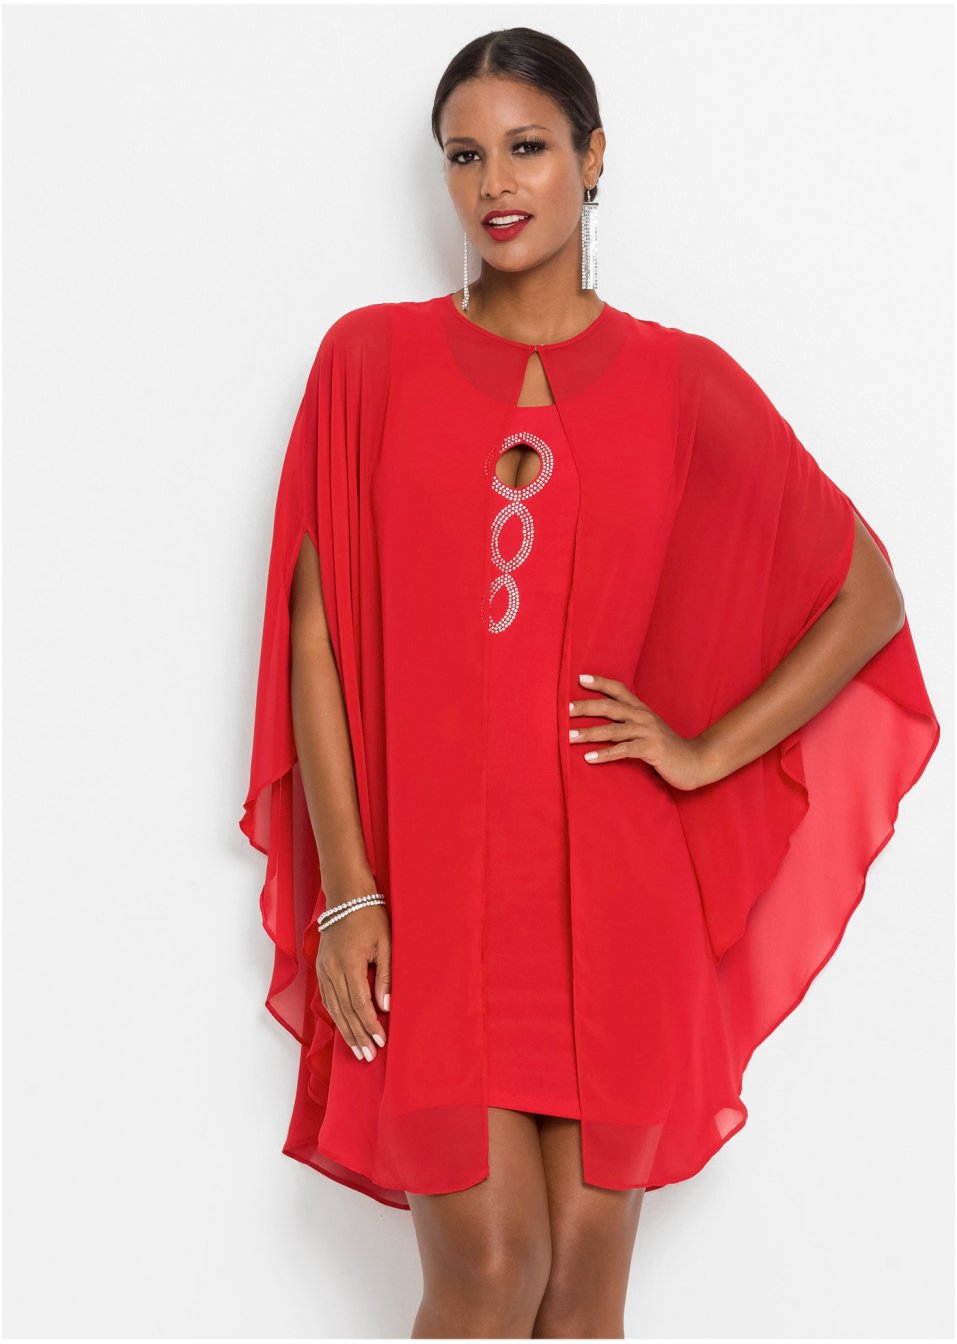 Mellanlång klänning med applikationer röd - BODYFLIRT boutique köp online - bonprix.se